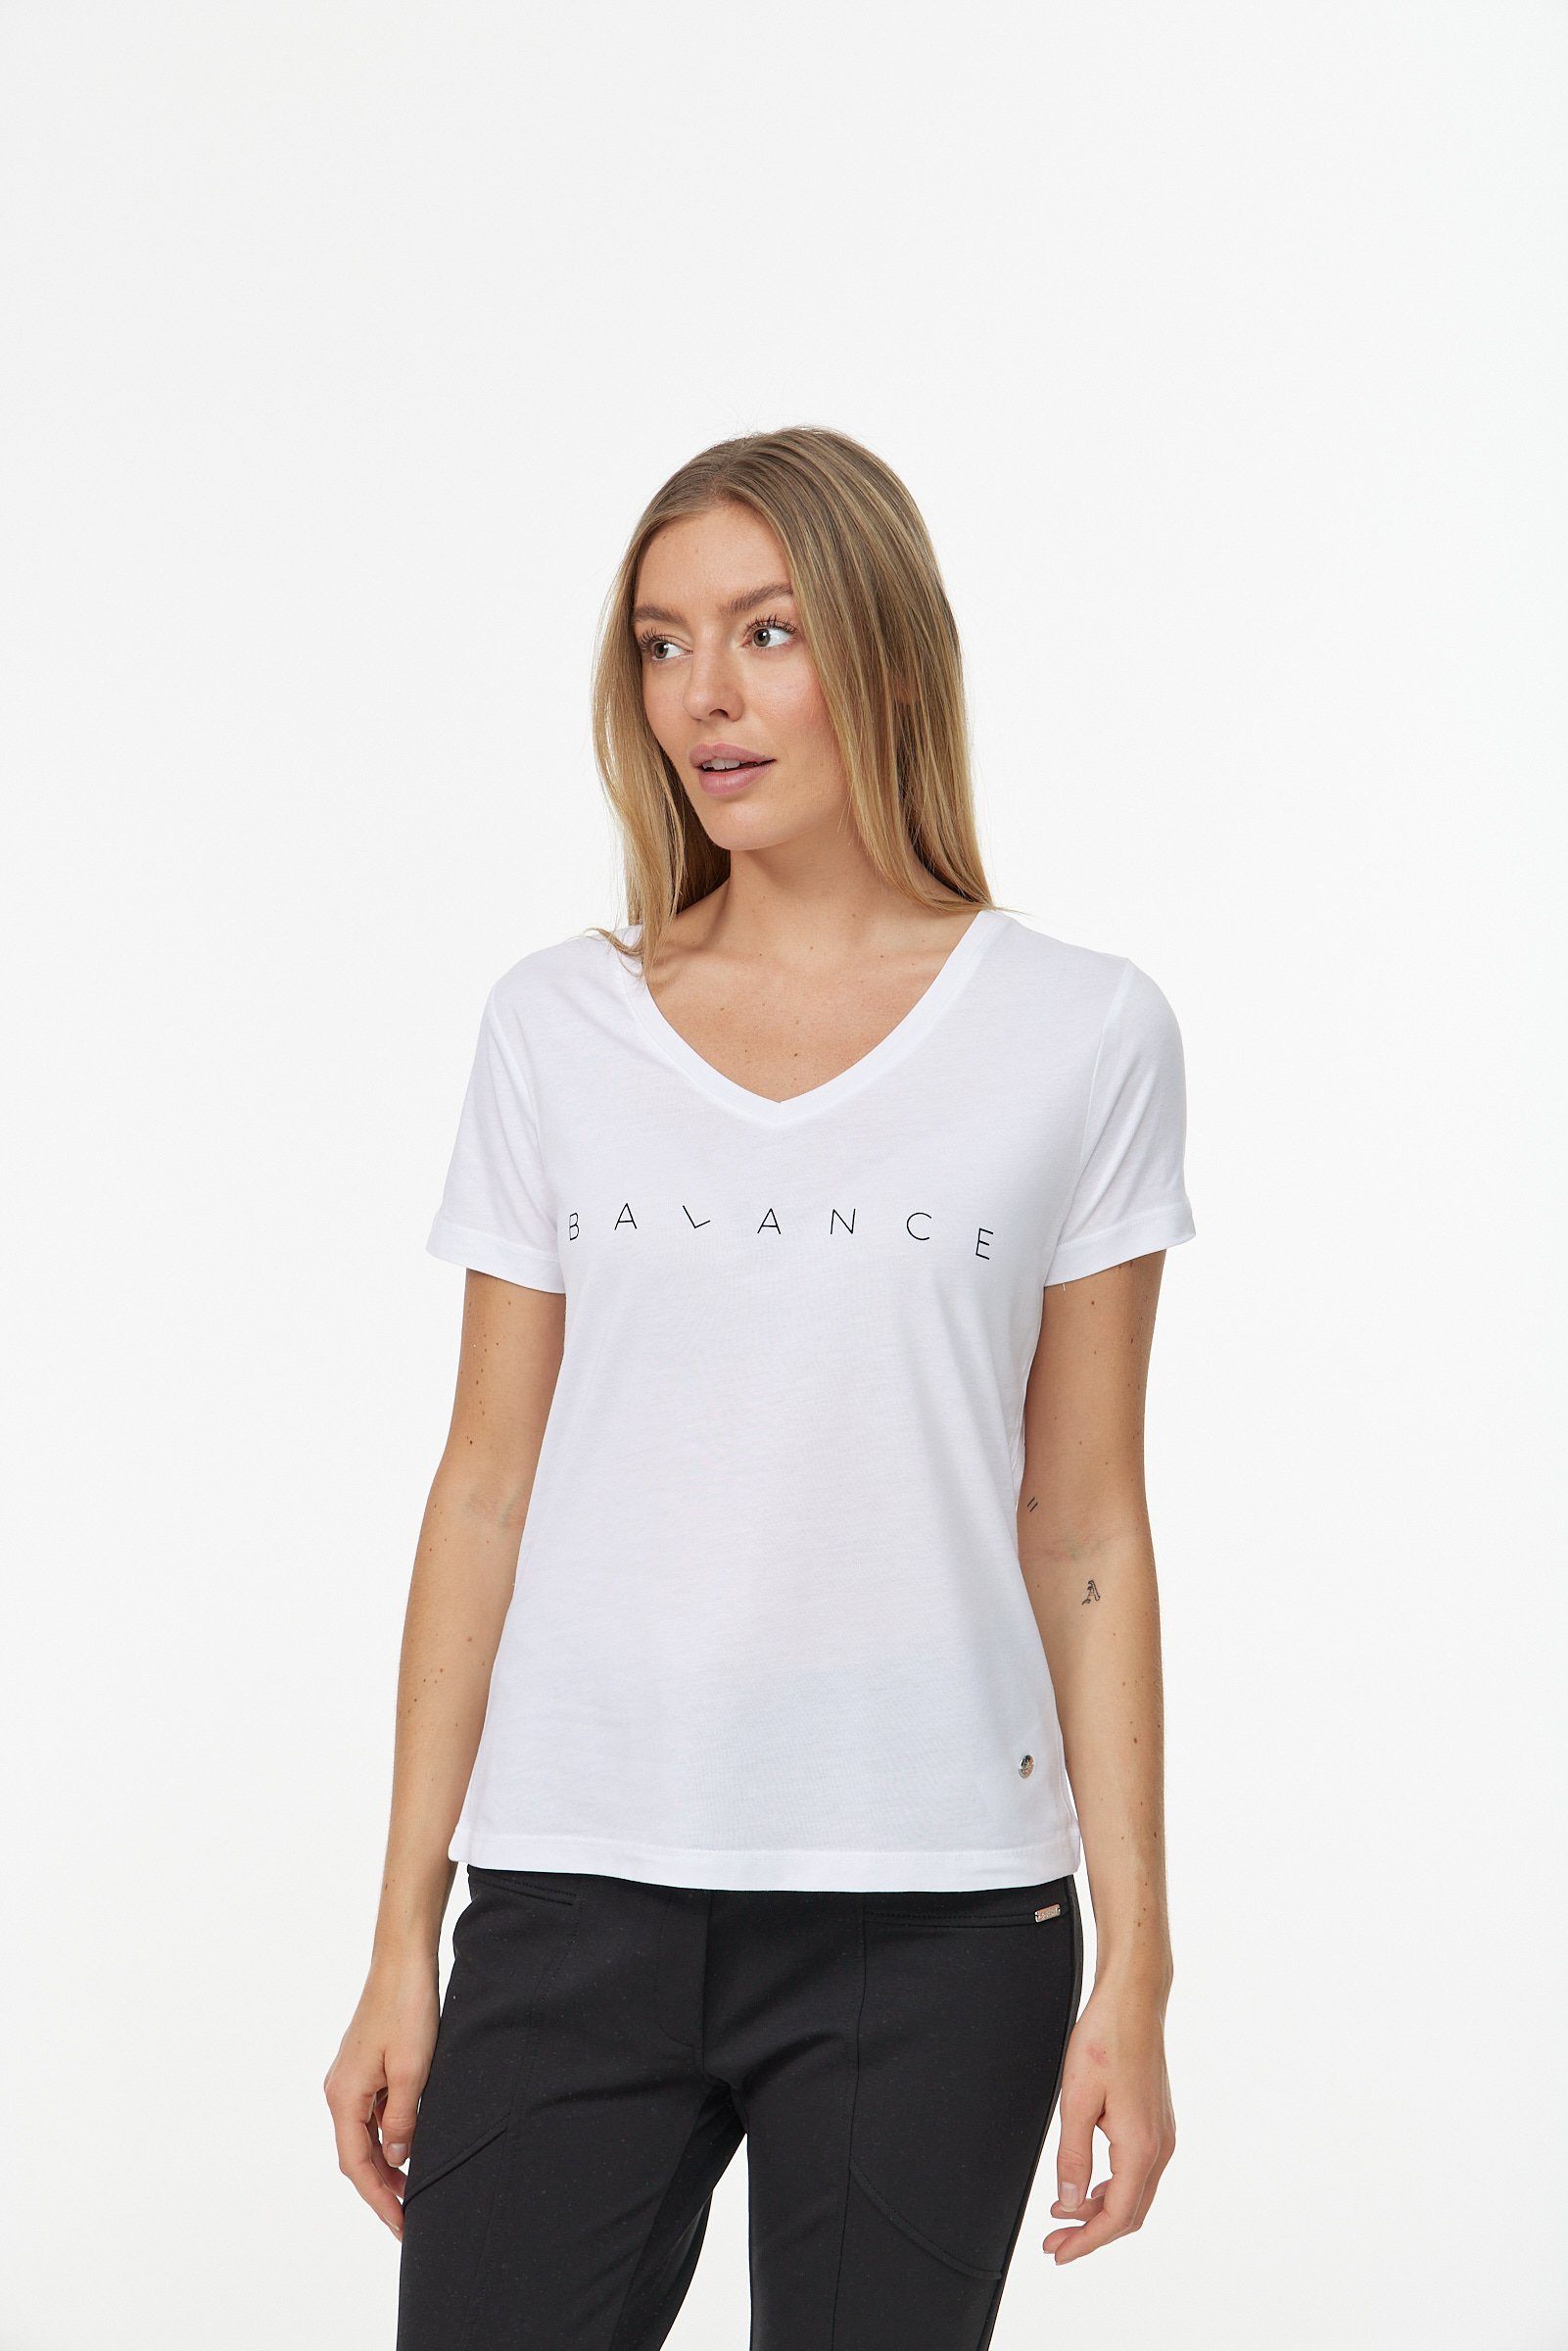 weiß-schwarz Decay in schlichtem T-Shirt Design